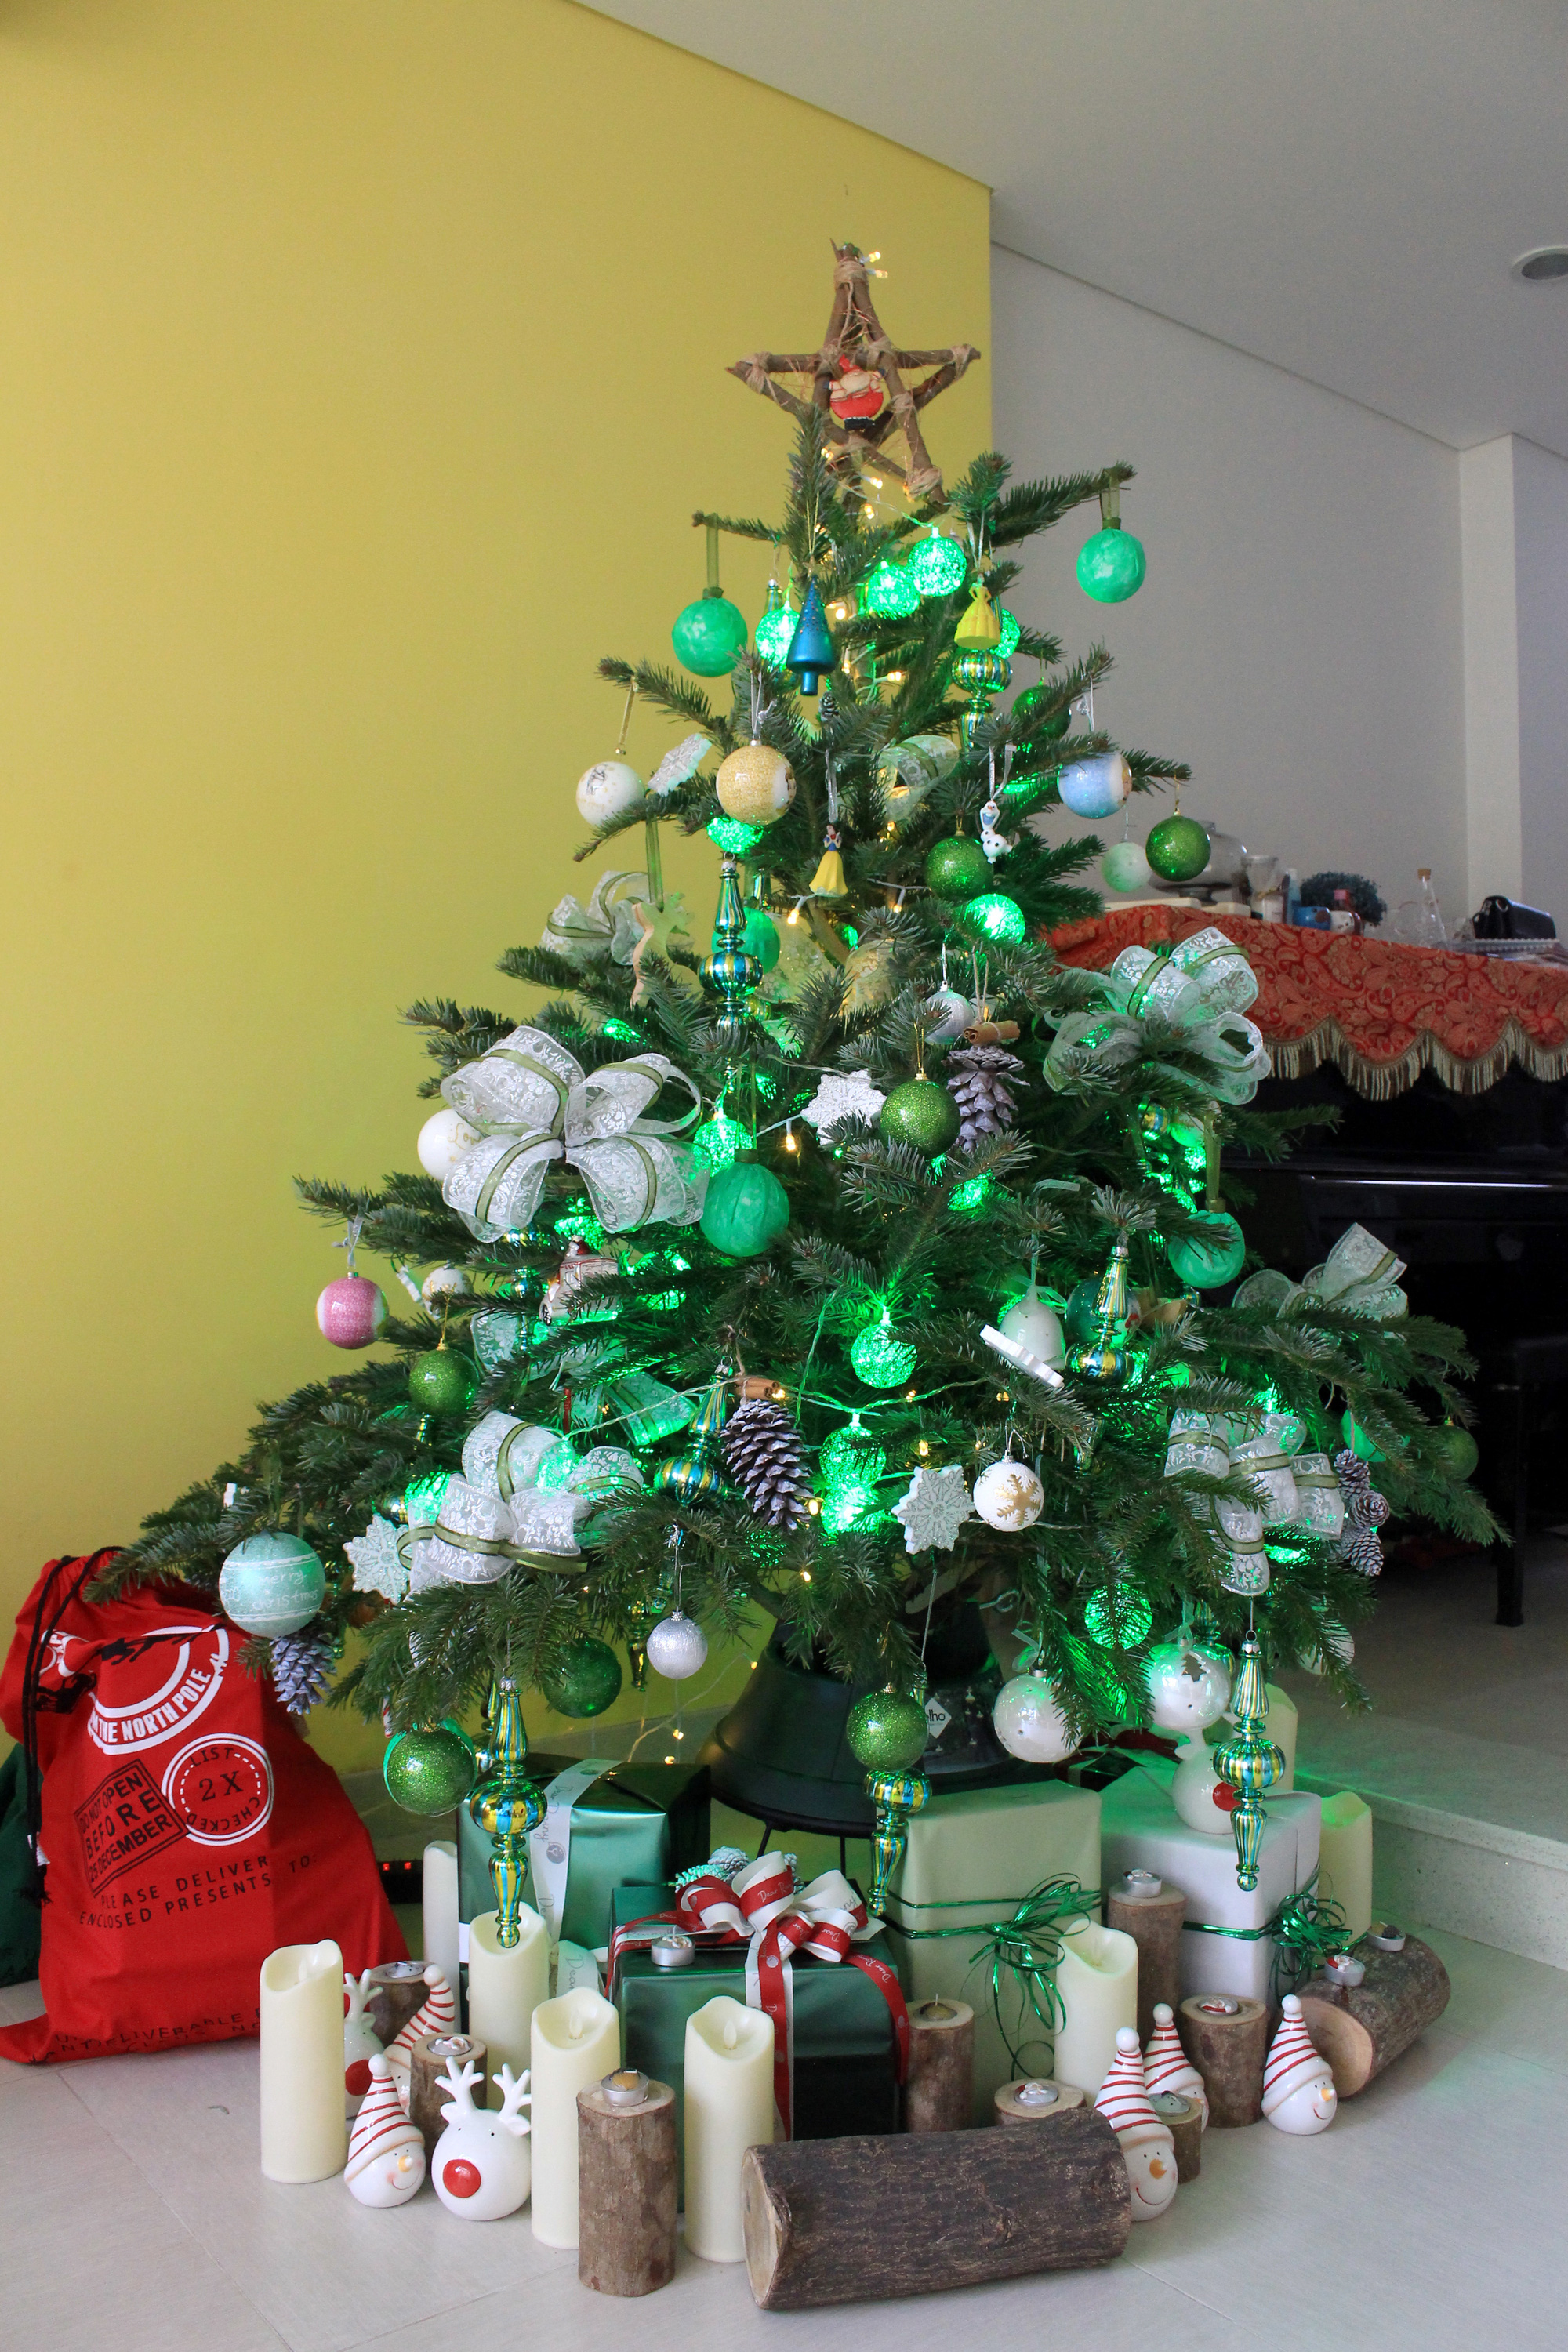 Cây thông Noel trang trí siêu lung linh sẽ là điểm nhấn hoàn hảo cho không gian nhà bạn trong mùa giáng sinh. Cùng ngắm những bức hình ảnh về cây thông Noel đầy màu sắc và phong cách trang trí độc đáo nhé.